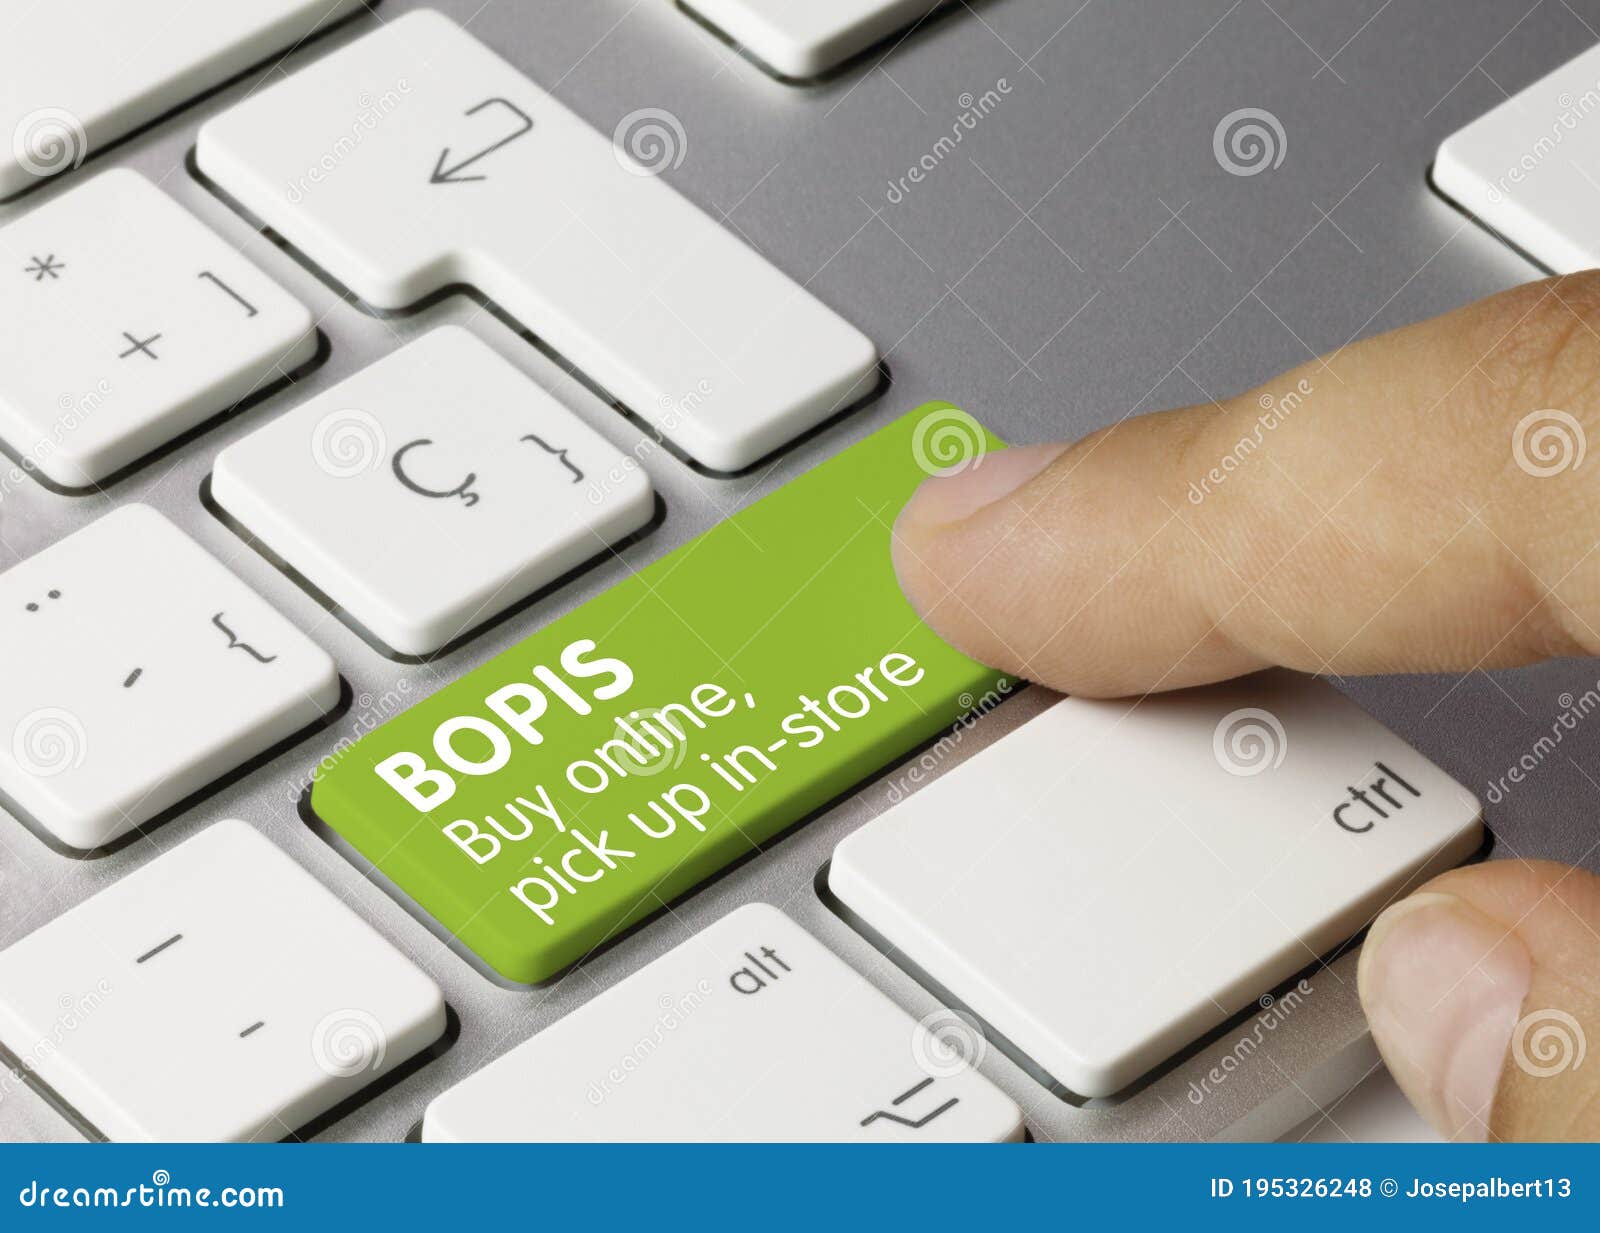 bopis buy online, pick up in-store - inscription on green keyboard key